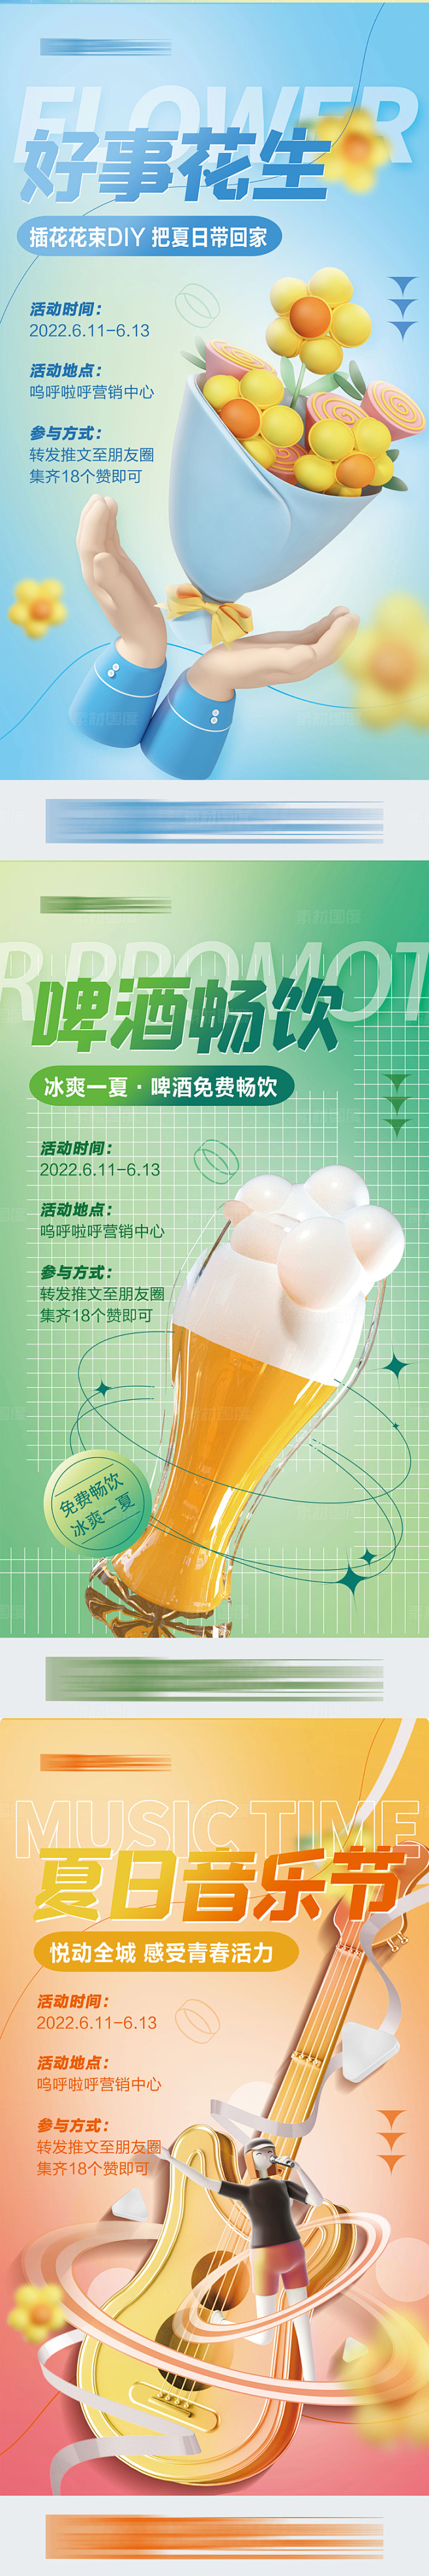 地产商业市集啤酒节插花音乐节活动海报